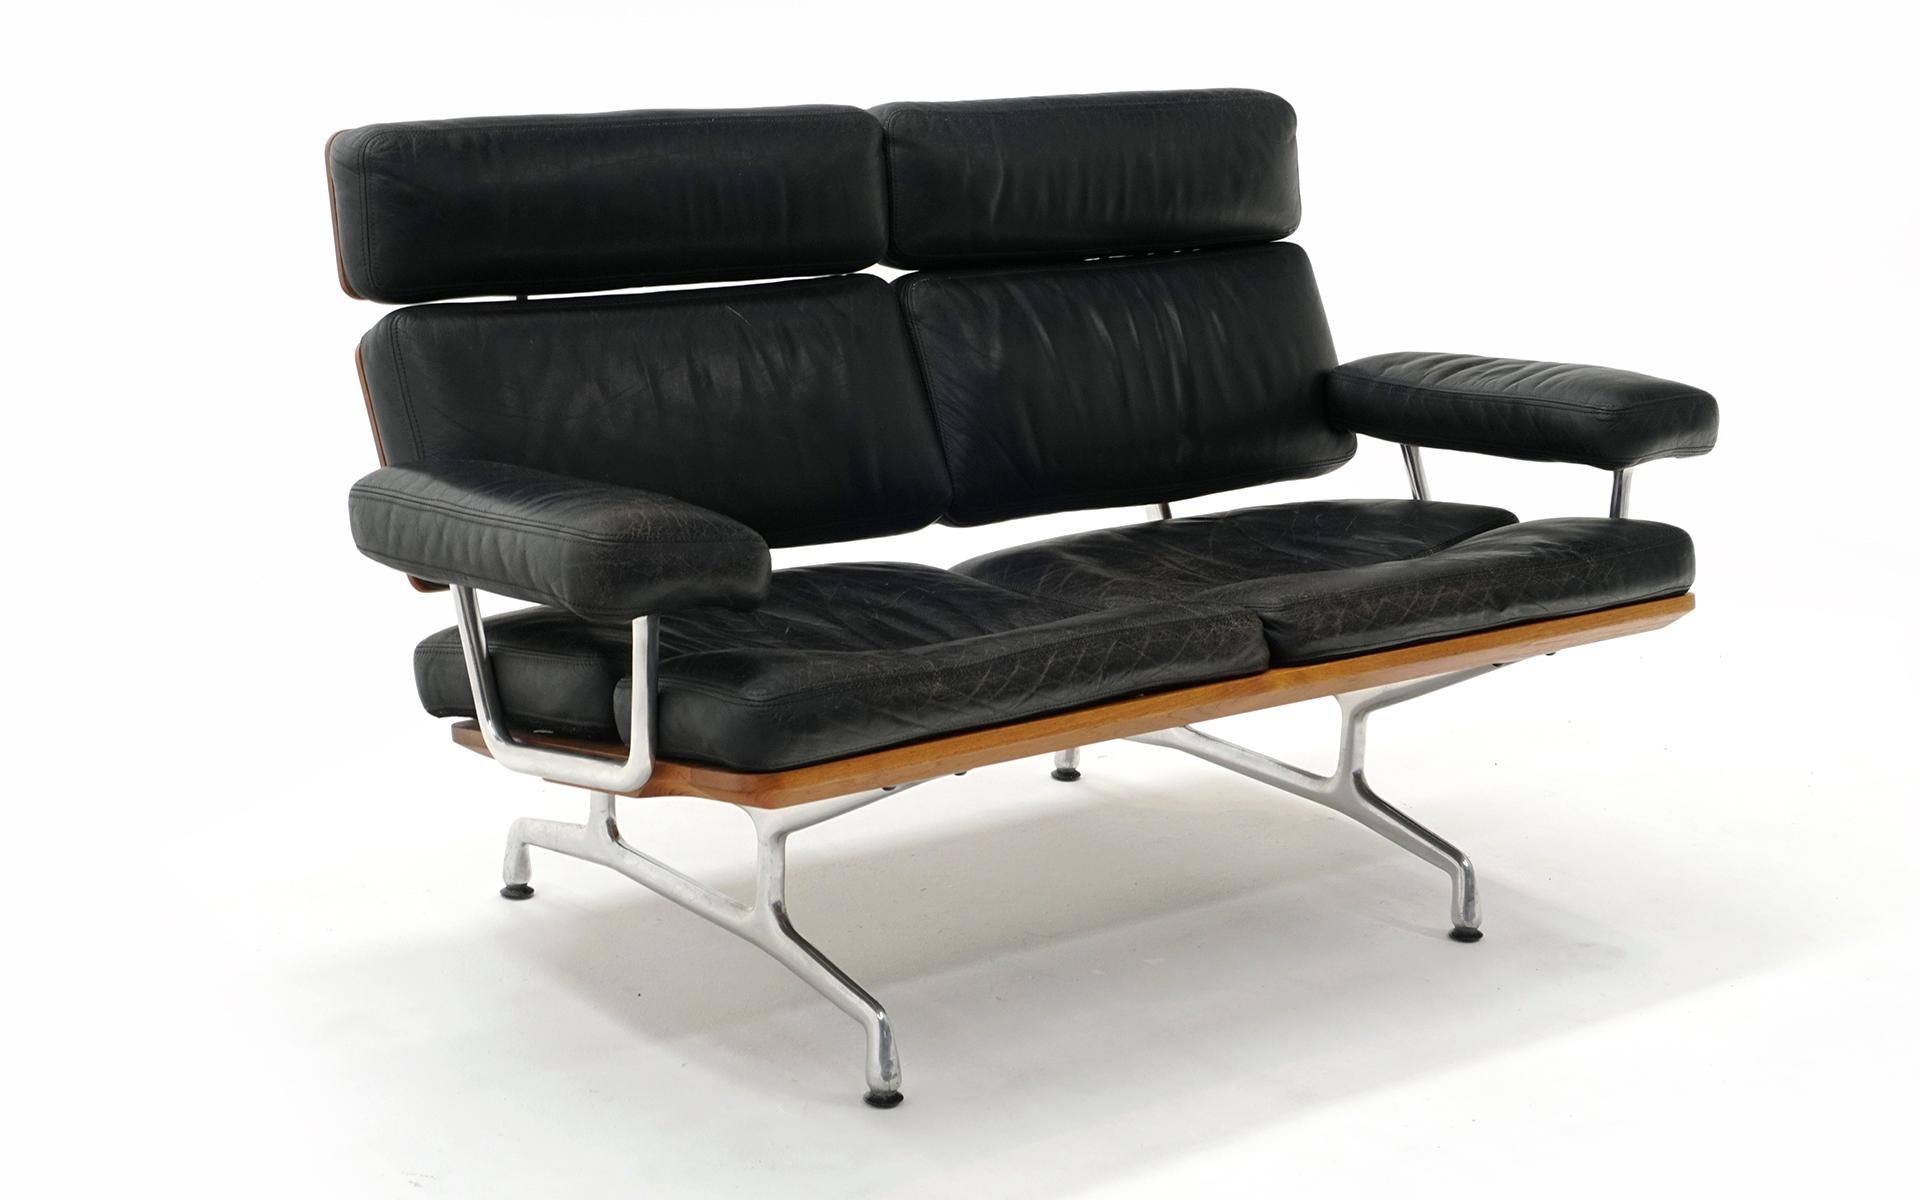 Eames Zweisitzer-Sofa Loveseat / Love Seat für Herman Miller. Frühe Produktion. Schwarzes Leder und massives Teakholz. Das Eames-Sofa ist das letzte Möbelstück, das vom Eames Office produziert wurde, das den Entwurf nach dem Tod von Charles Eames im